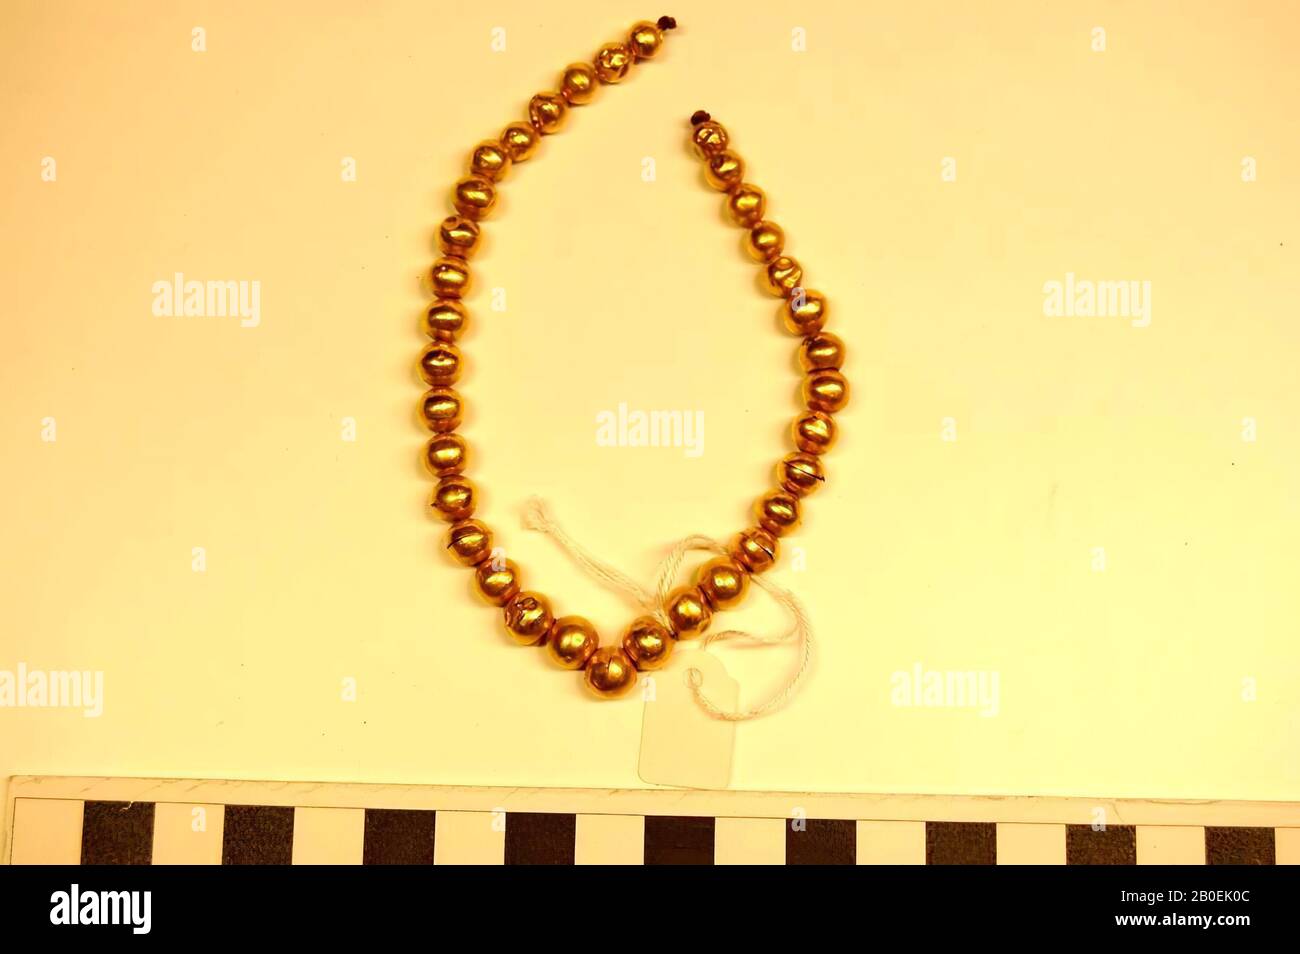 34 boules dorées rondes perles sur cordon, chaîne, cordes de perles, or, 22,3 cm, époque impériale romaine 0 Banque D'Images